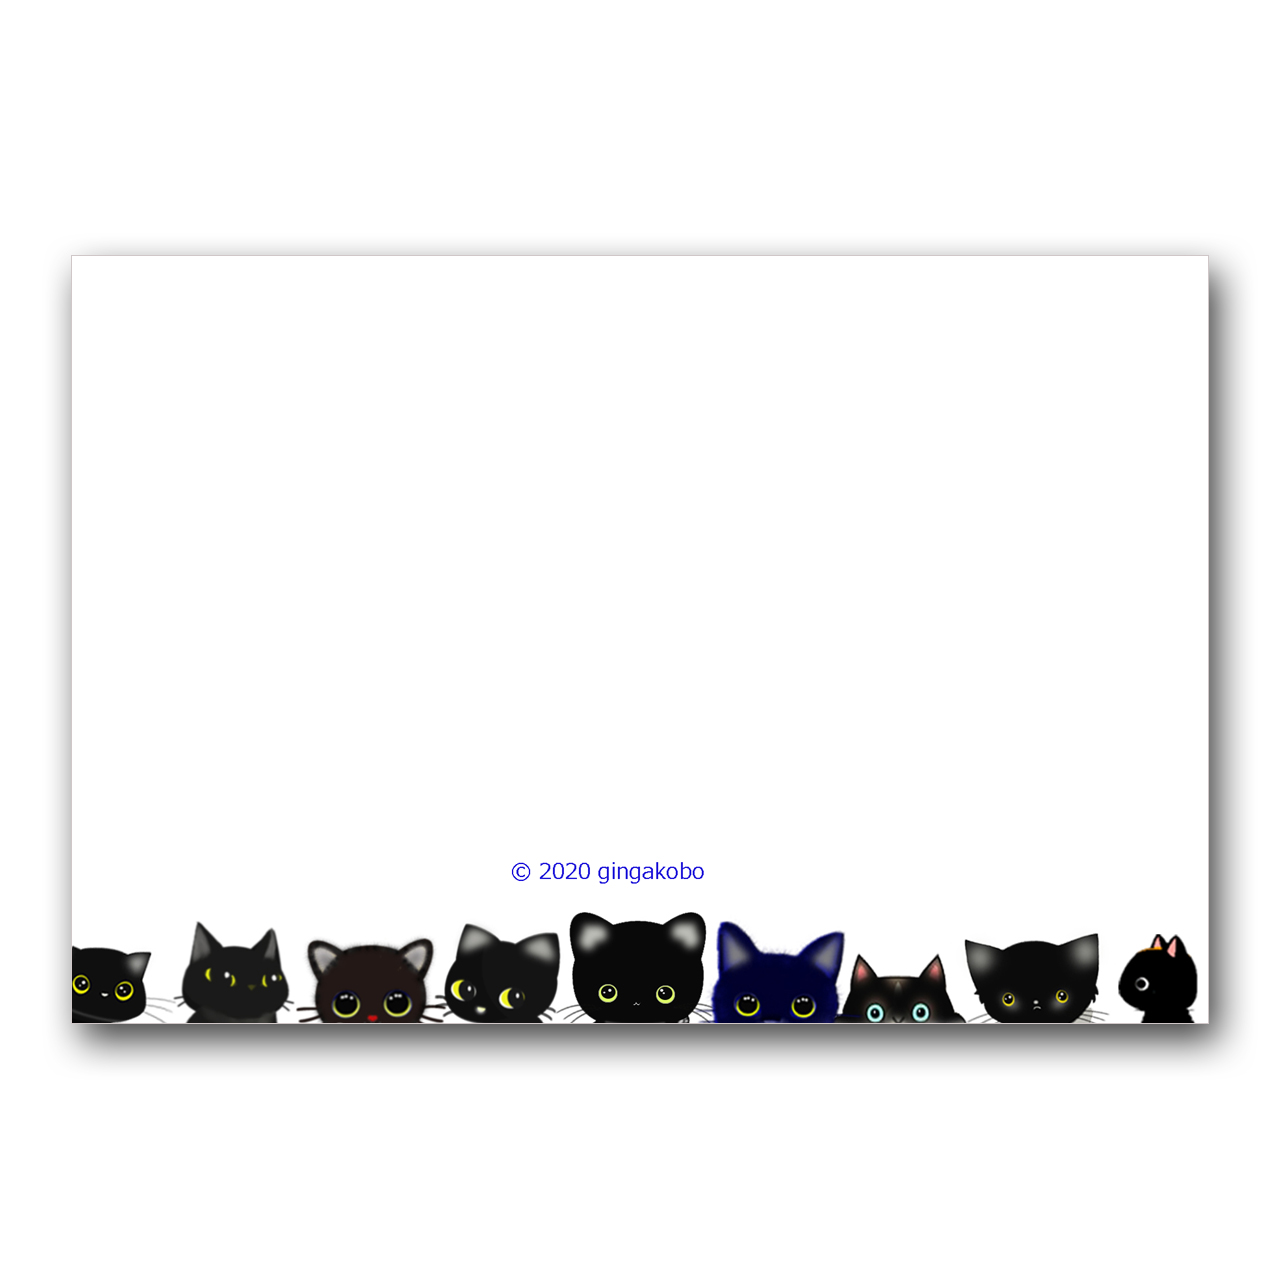 いつだってリセットボタンになってくれる猫ちゃん 黒猫 ほっこり癒しのイラストポストカード2枚組 No 1240 Iichi ハンドメイド クラフト作品 手仕事品の通販